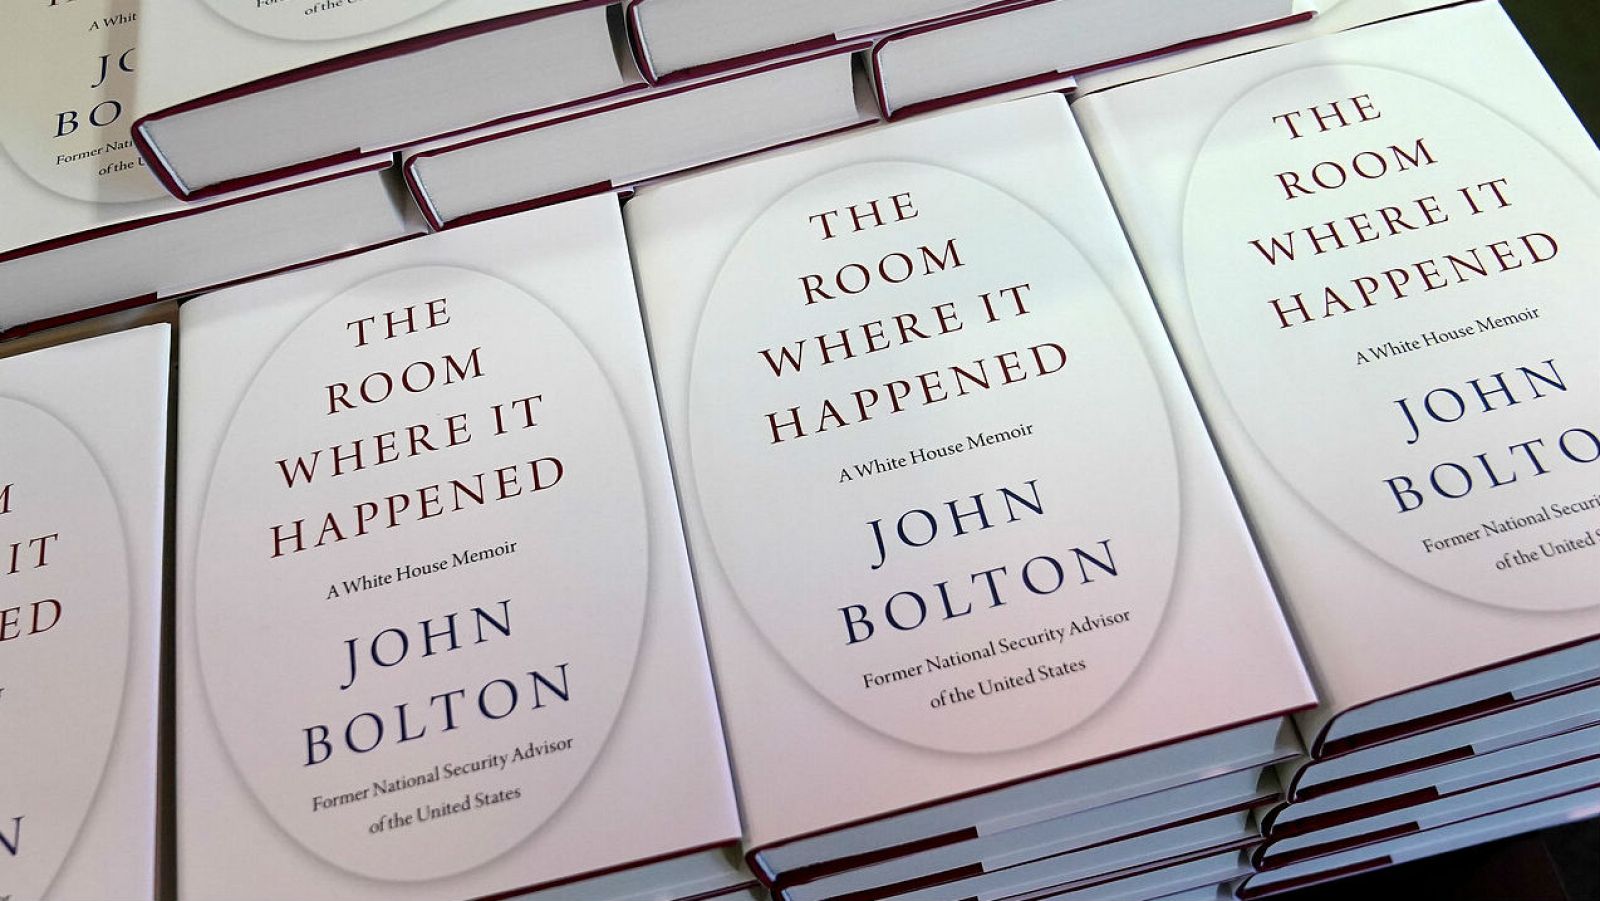 Copias del libro de John Bolton 'The Room Where It Happened' se muestran en exhibición en una librería de Manhattan, en la ciudad de Nueva York, Nueva York, EE. UU.